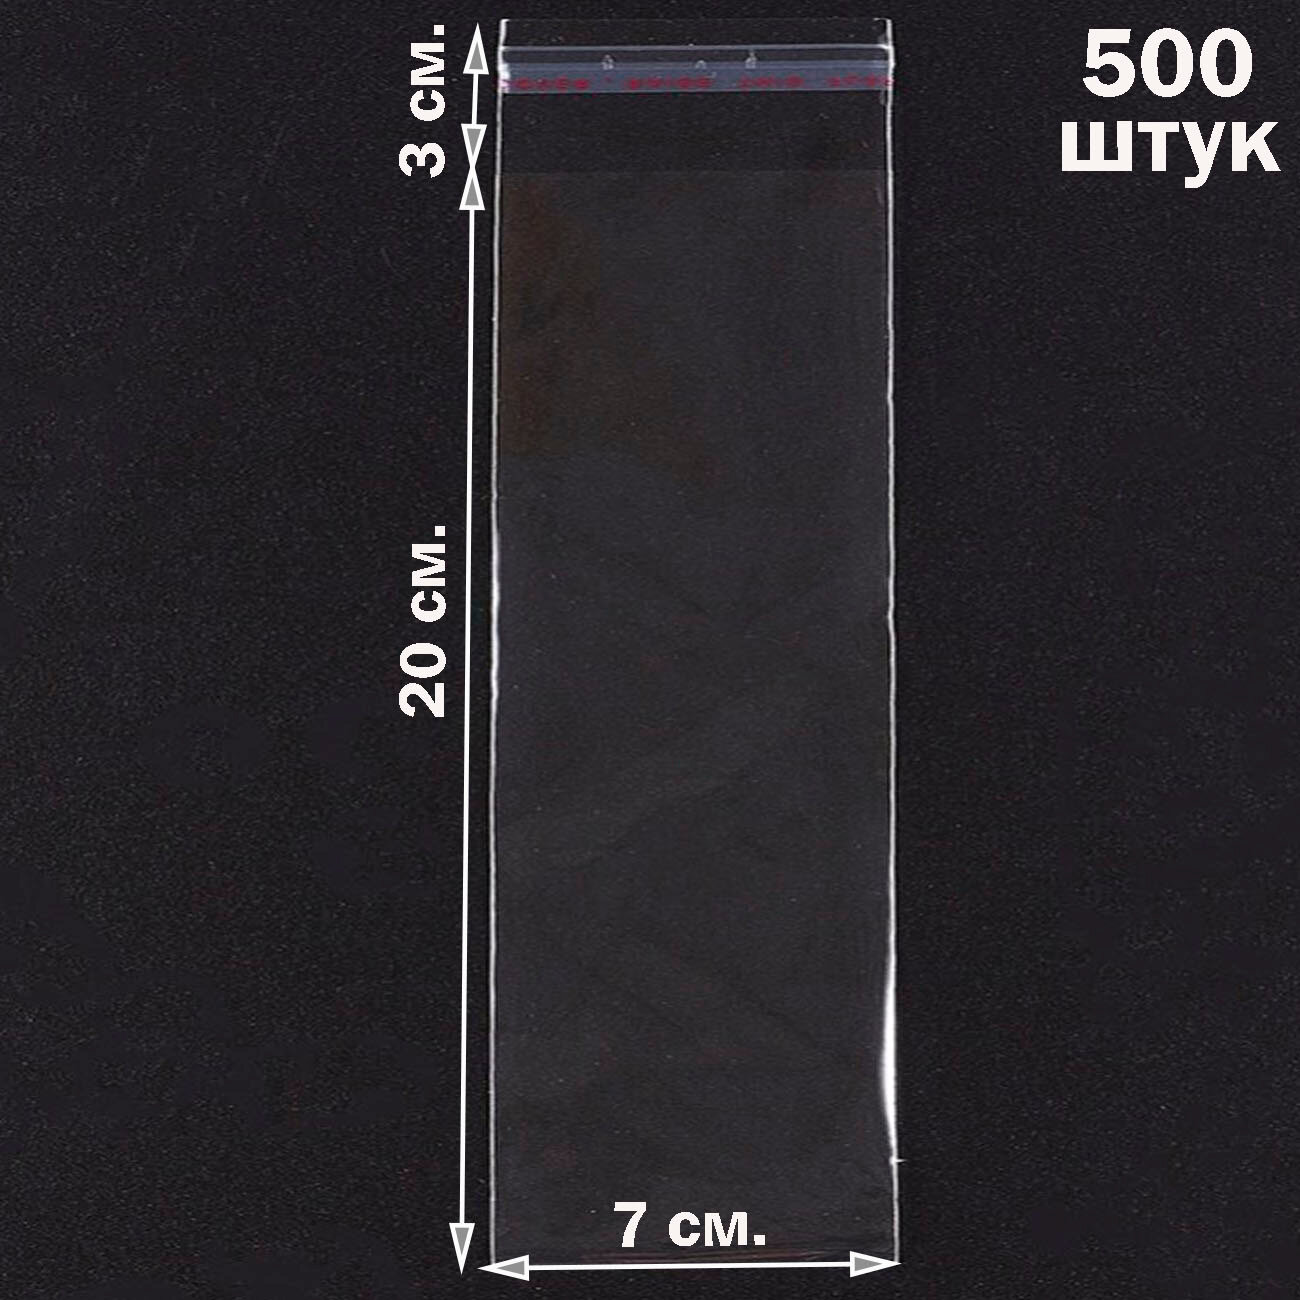 500 пакетов 7х20+3 см прозрачных с клеевым клапаном для упаковки из пленки бопп